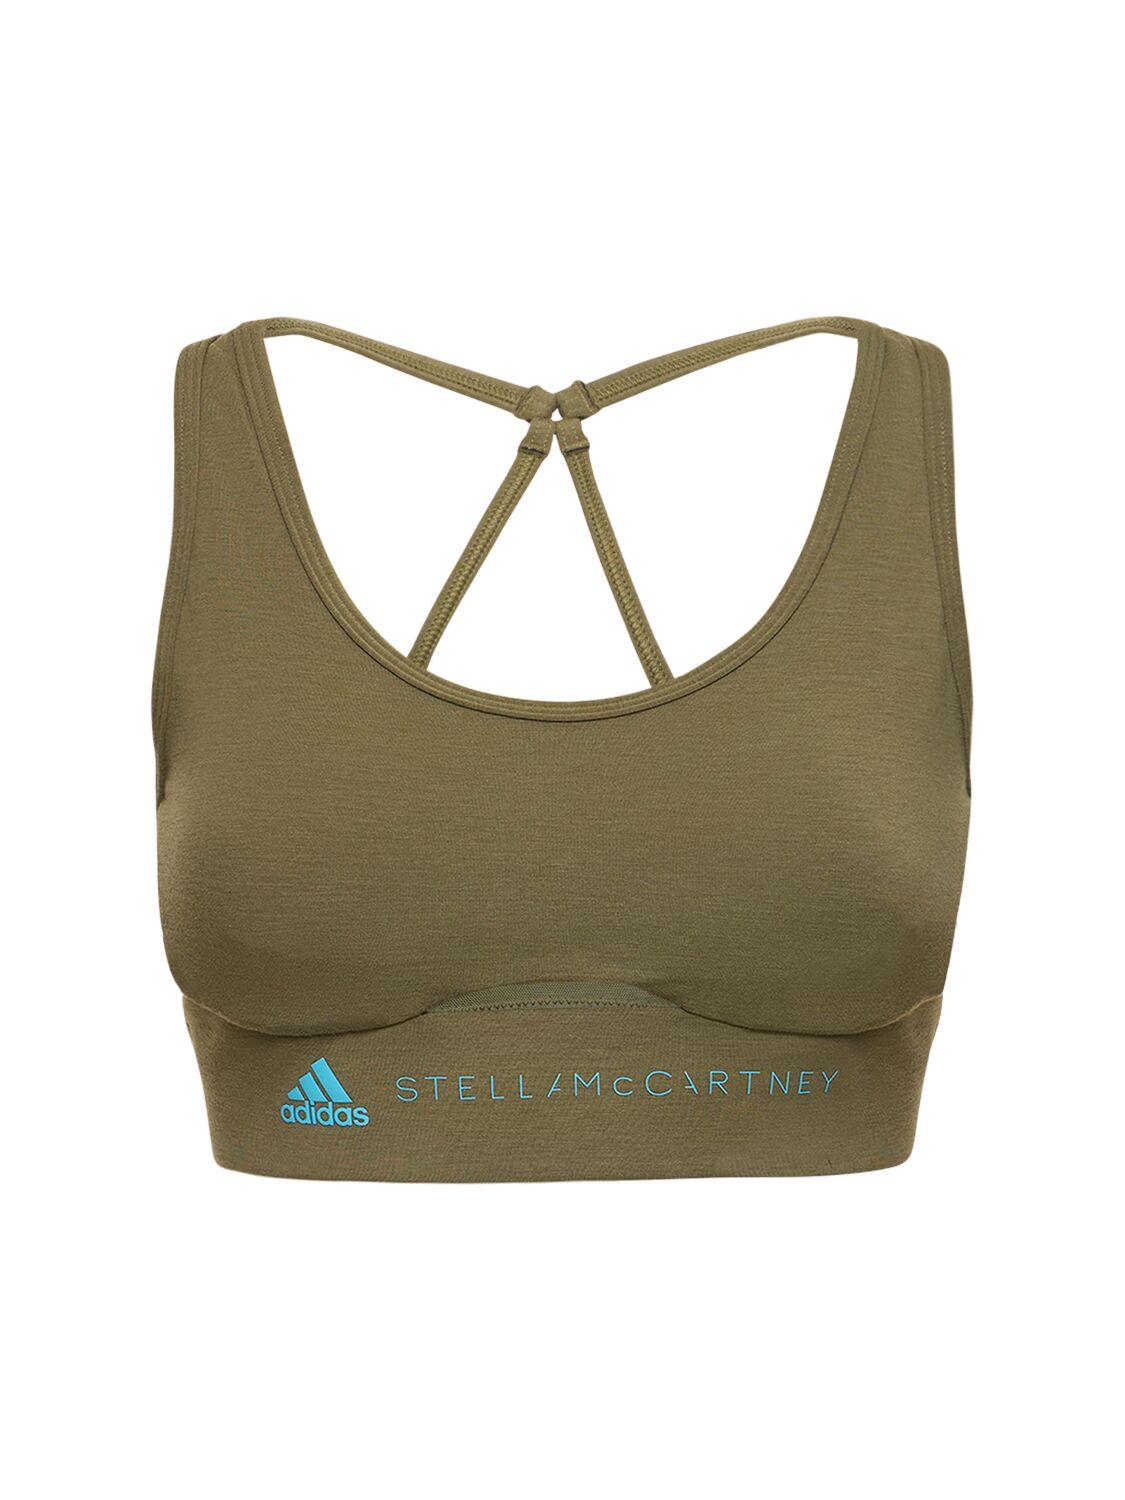 ADIDAS By STELLA Mccartney adidas by Stella McCartney TrueStrength Yoga  Crop Top, Grey Women's Crop Top